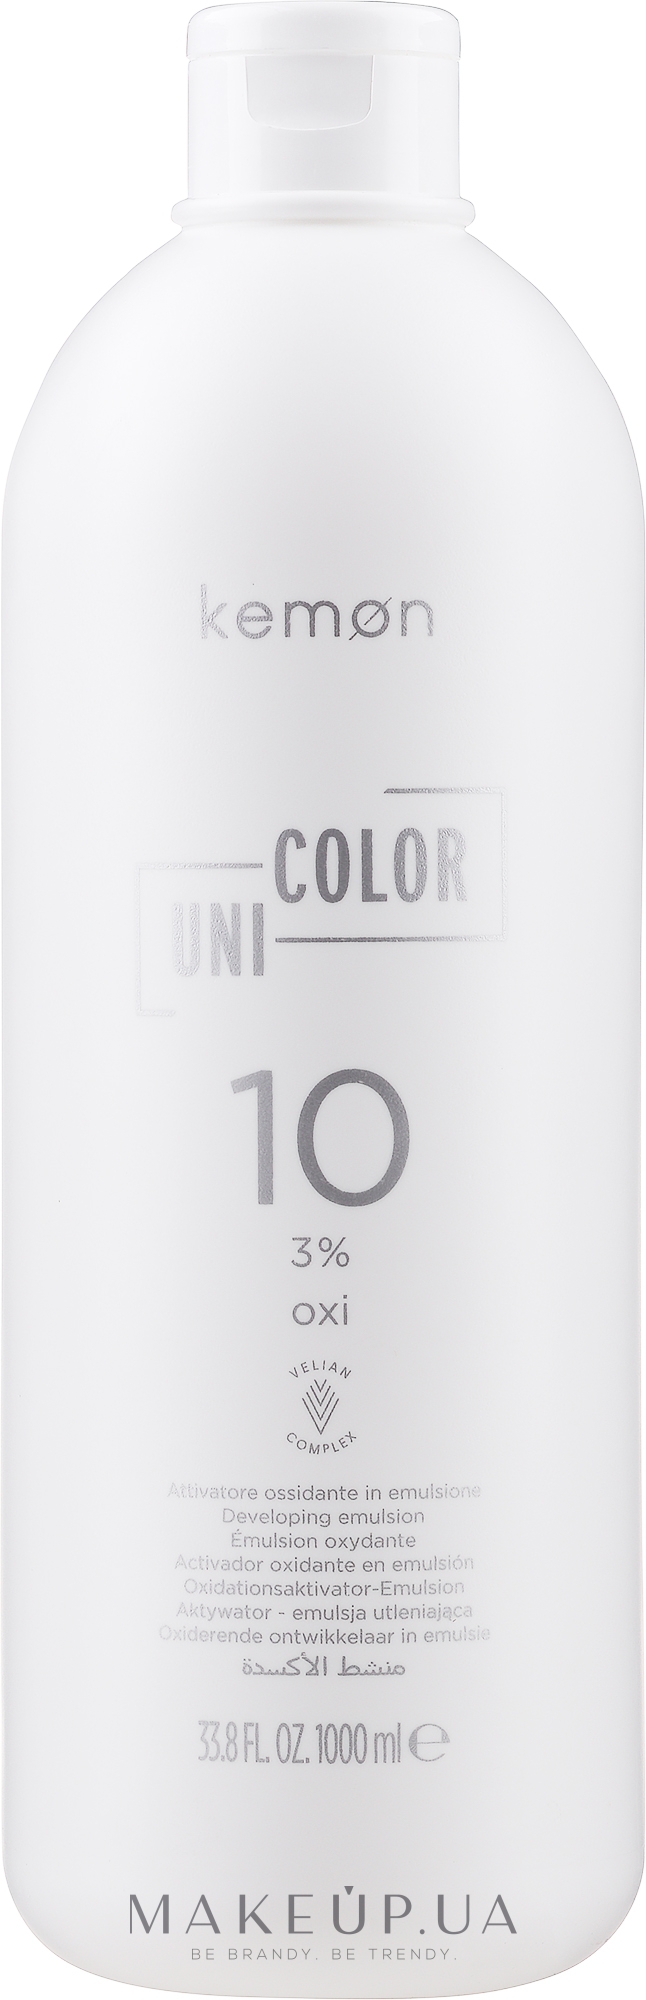 Окислитель универсальный для краски 3% - Kemon Uni.Color Oxi — фото 1000ml